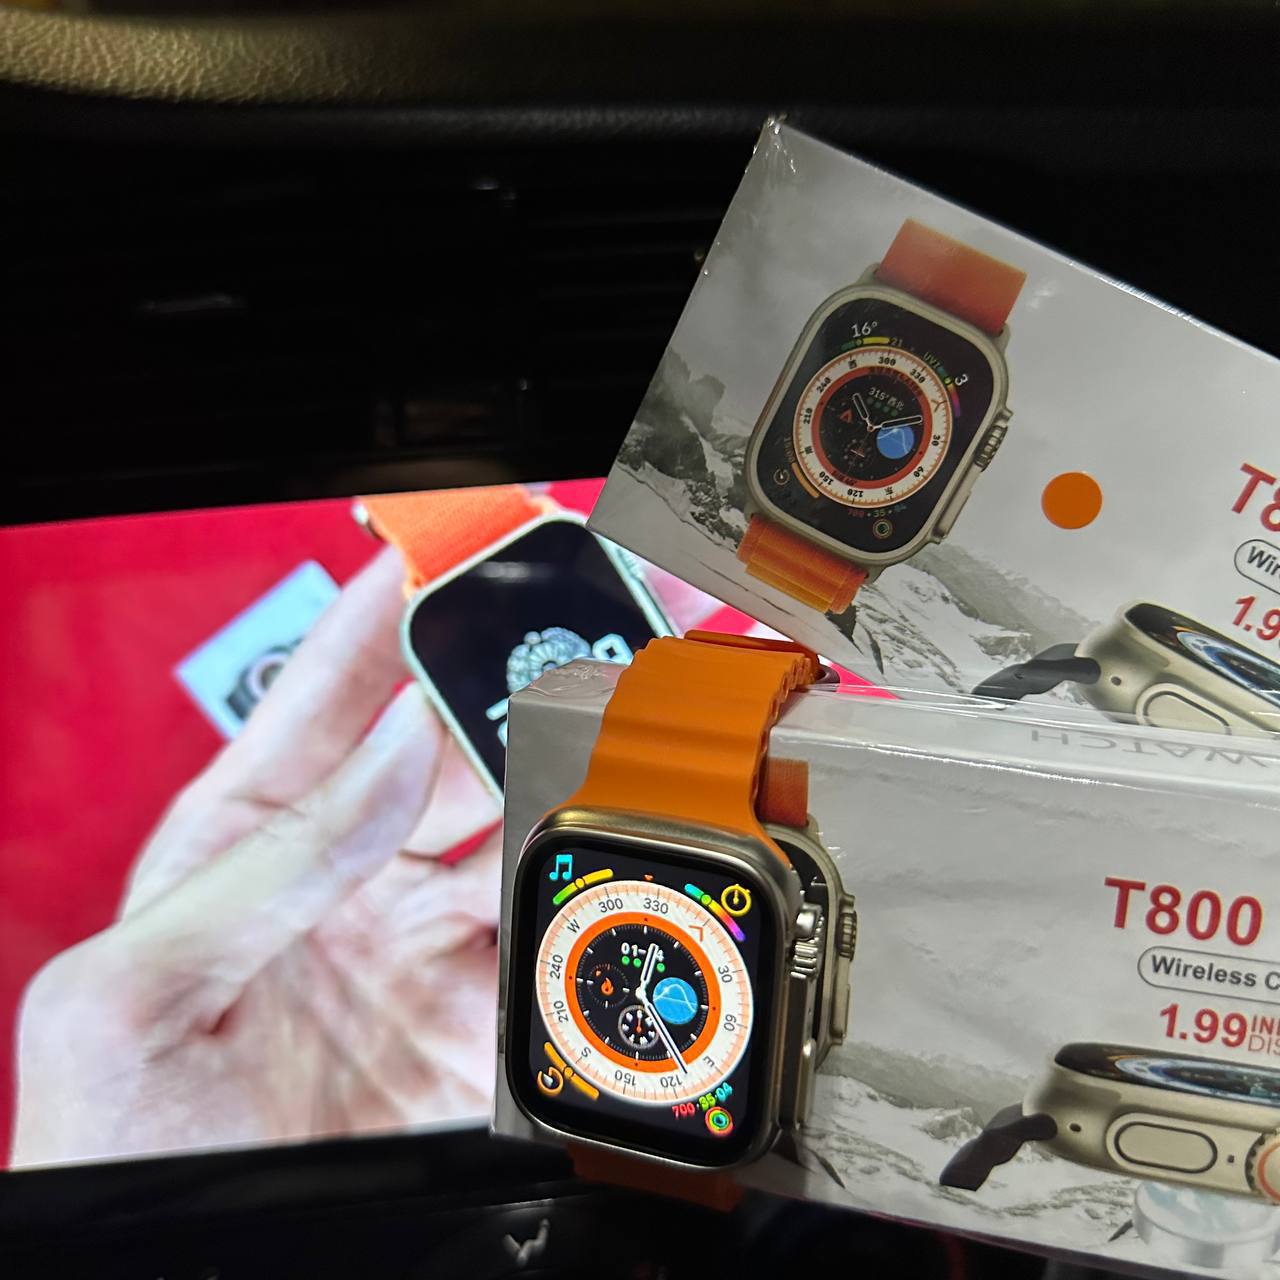 T800 Ulta Smart watch